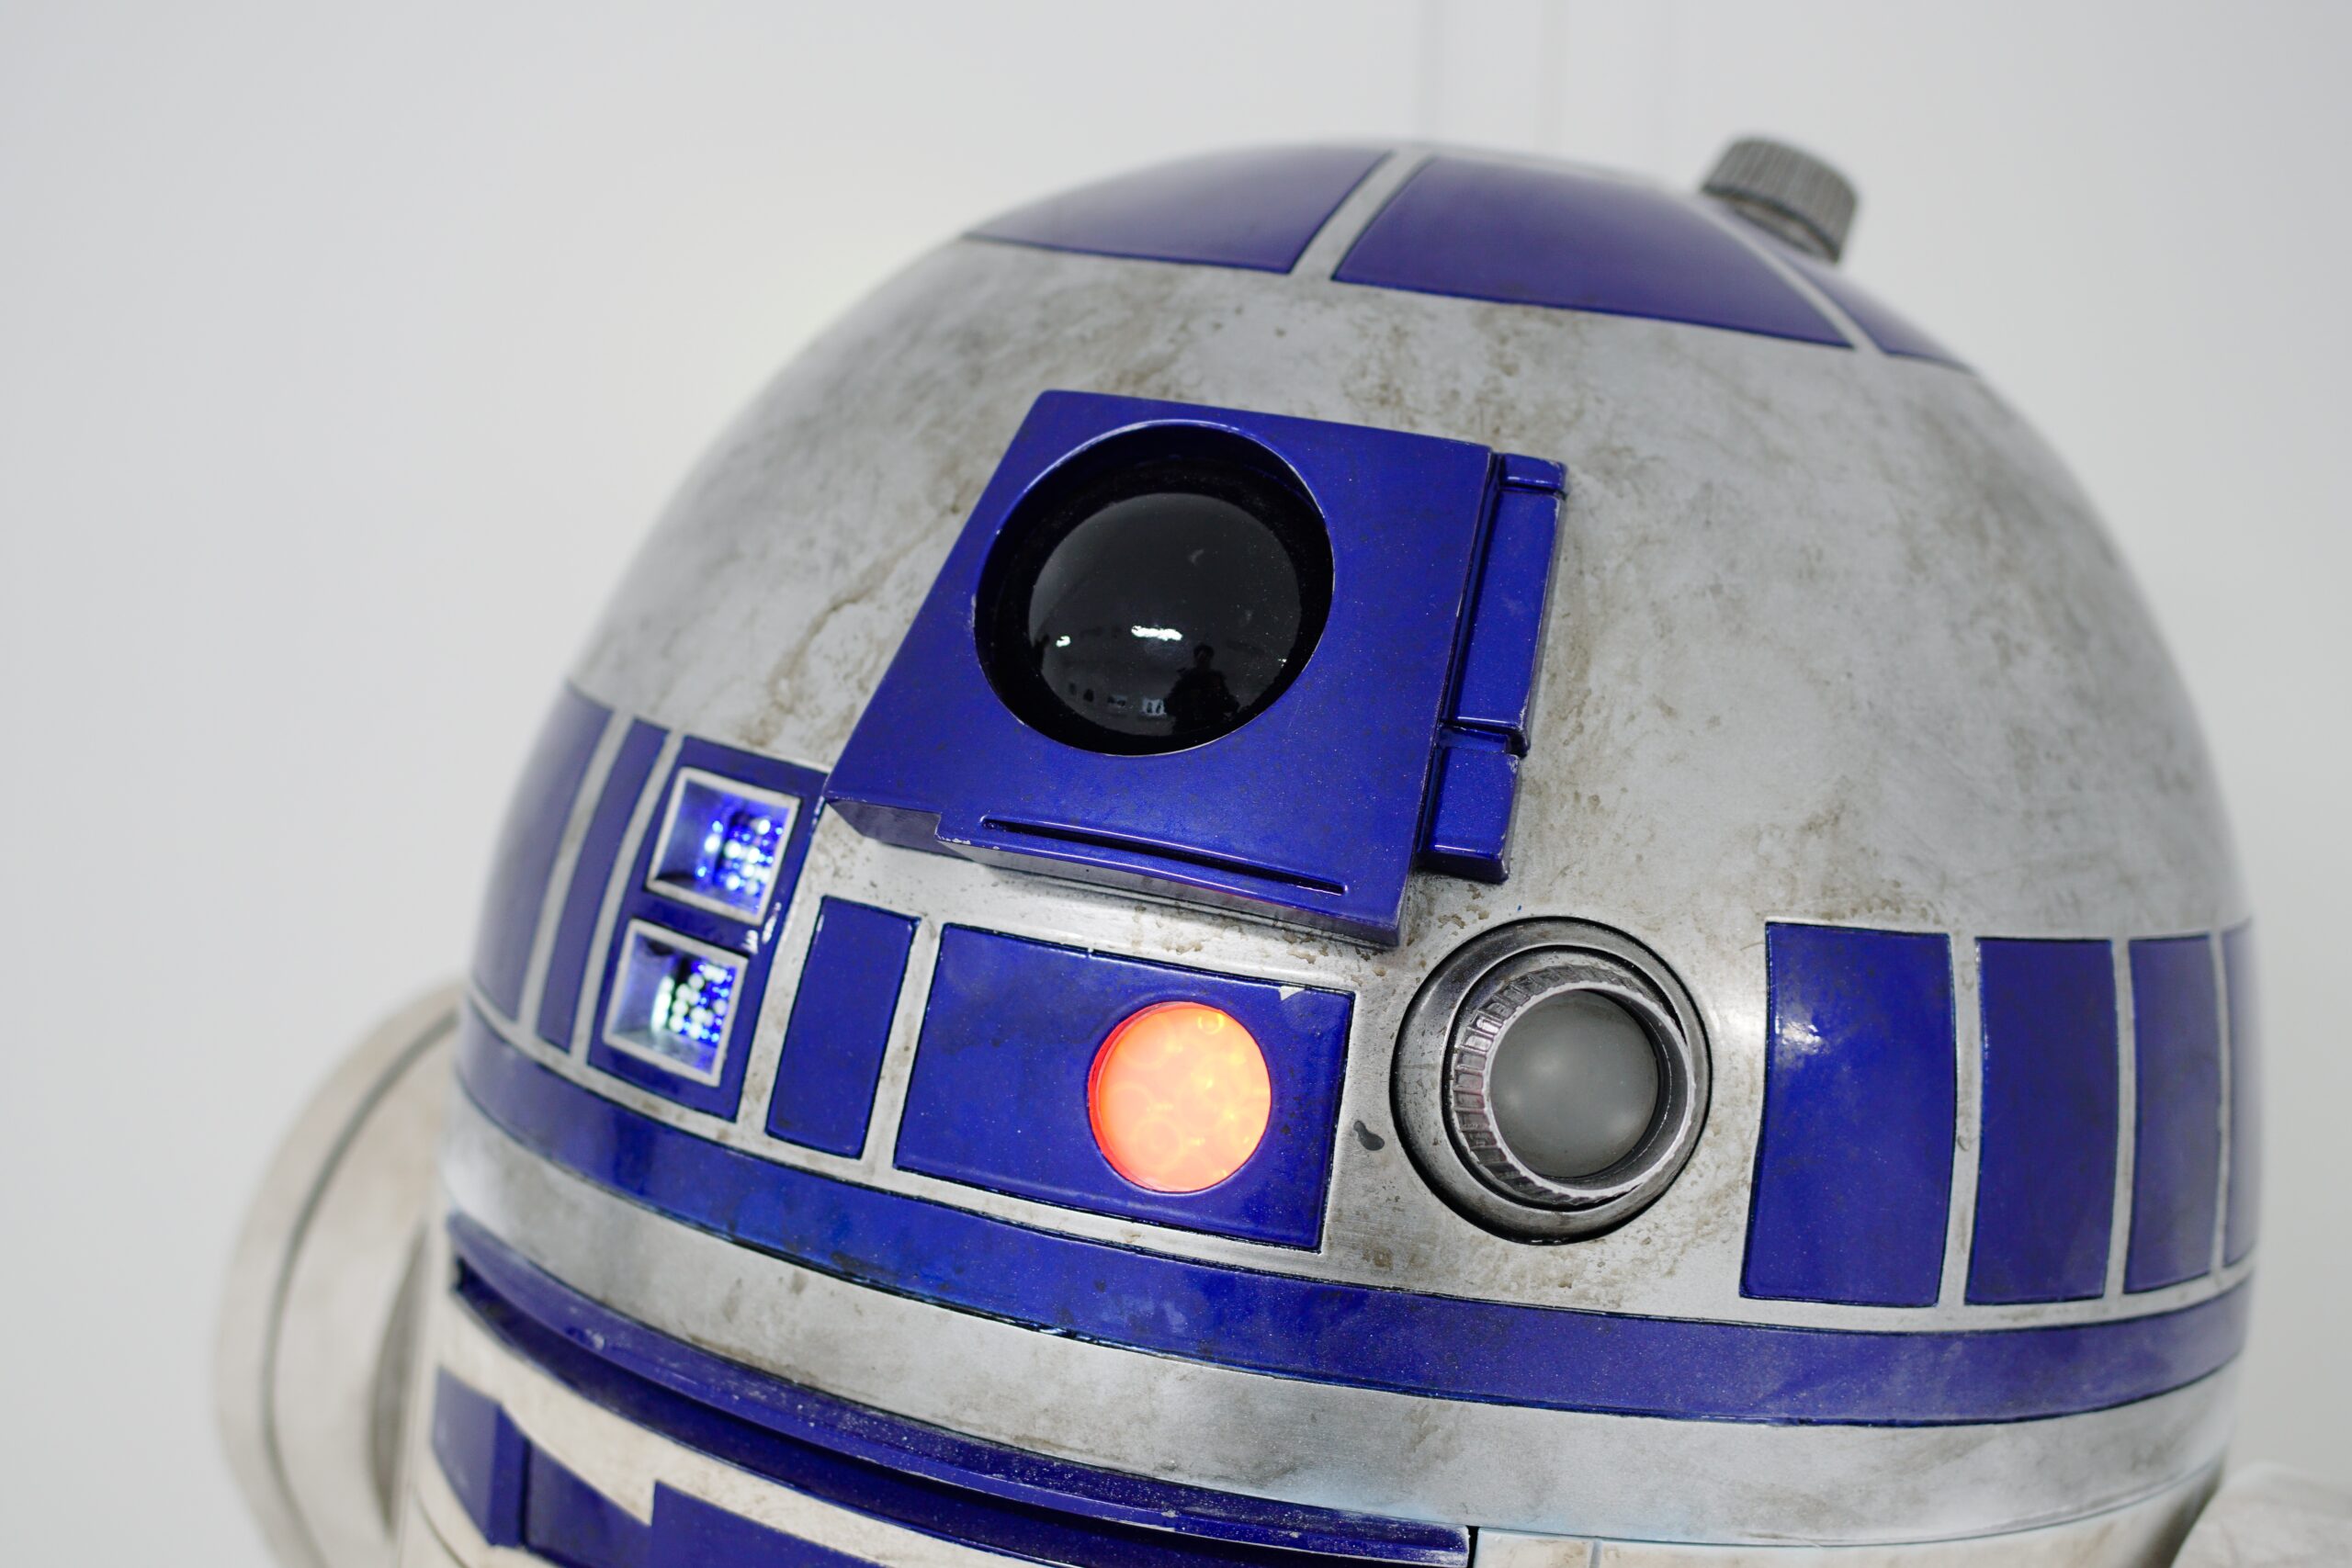 R2-D2, astromech